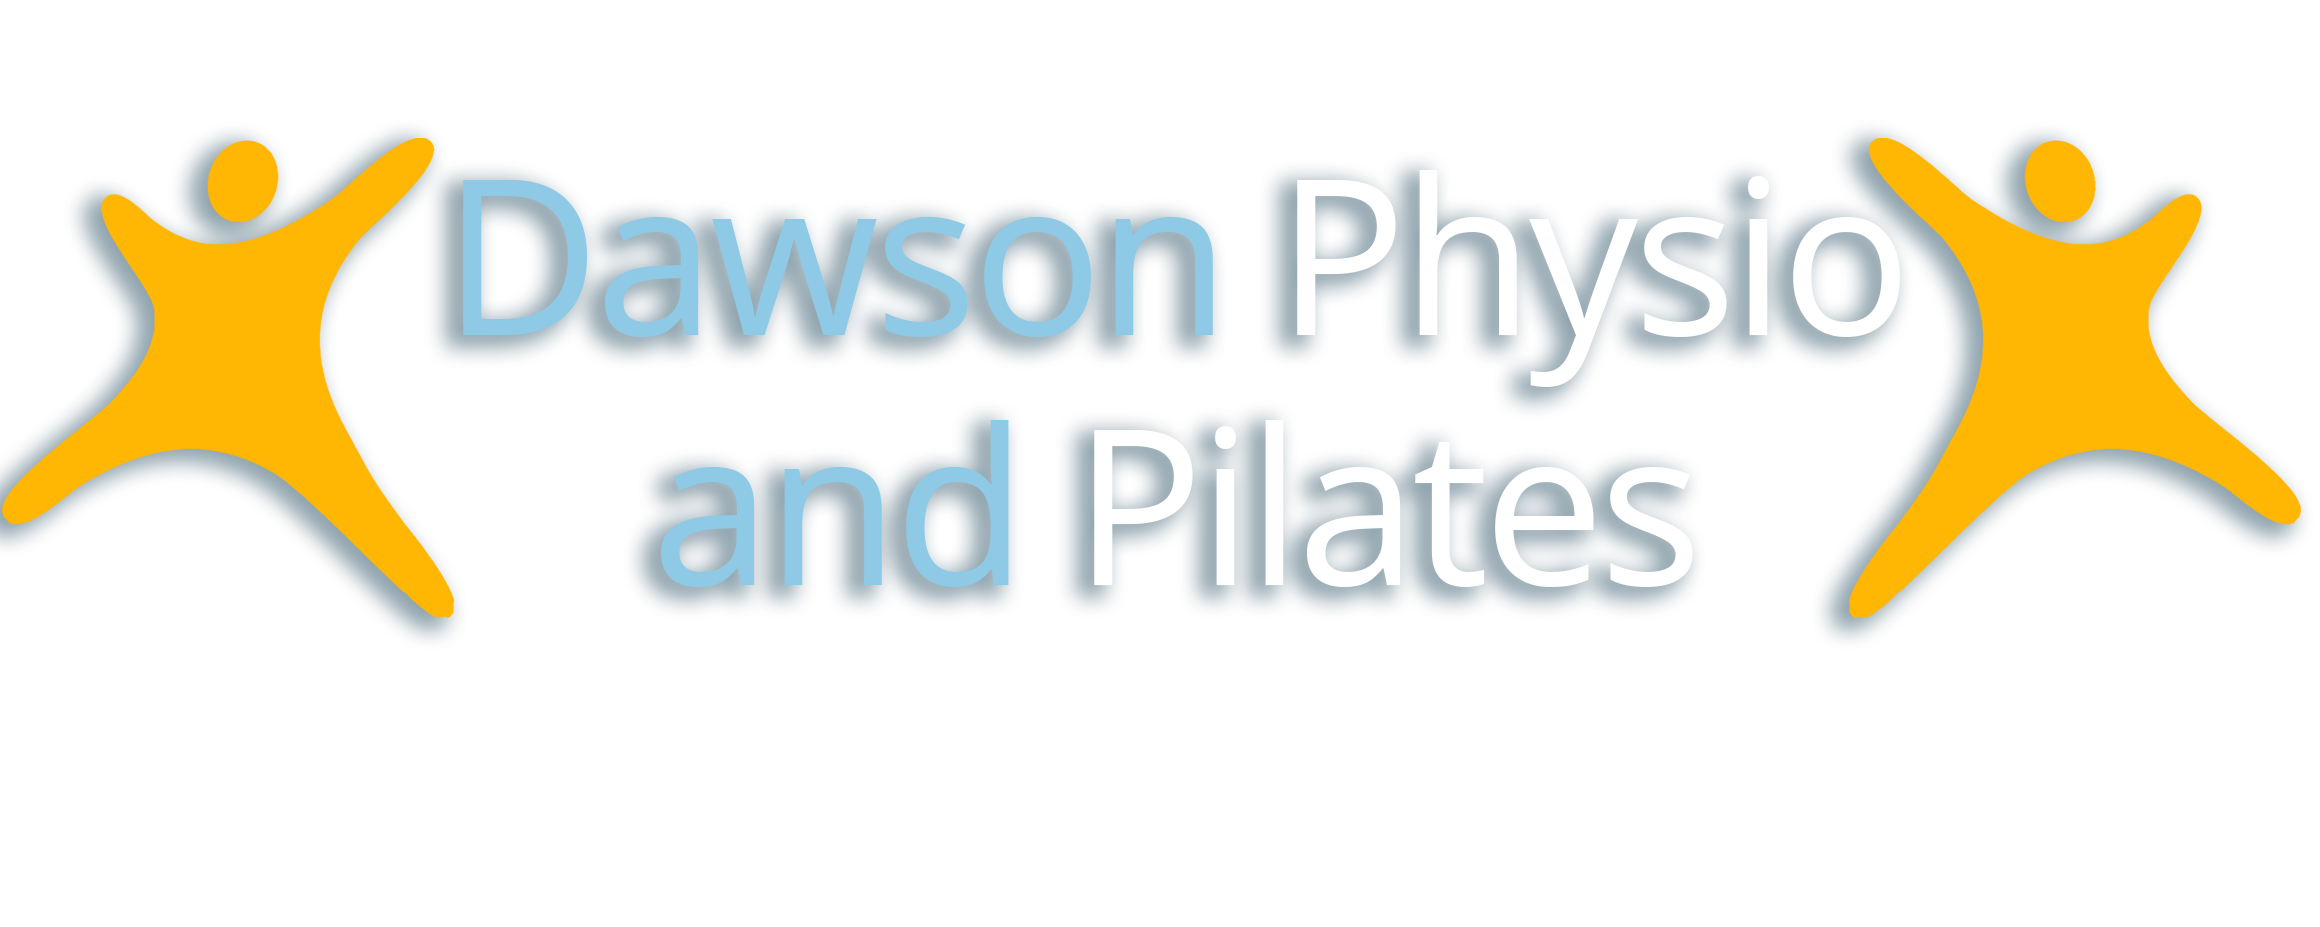 Dawson Physio and Pilates Logo